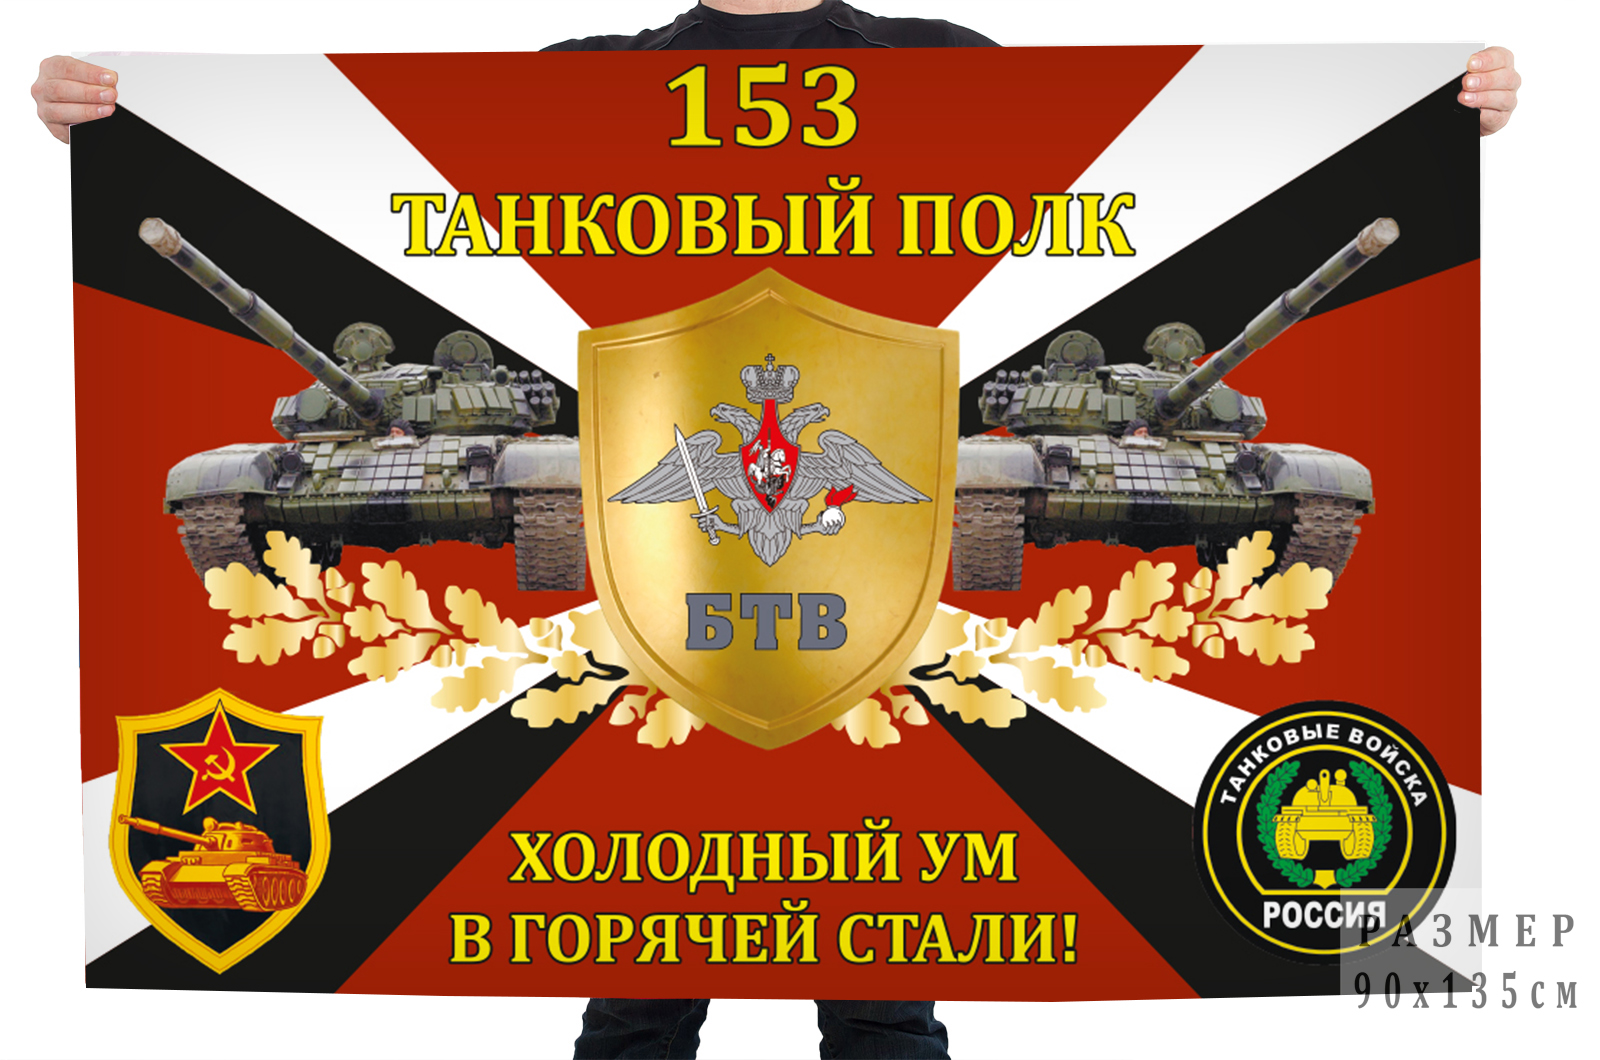 Флаг 153-го танкового полка "Холодный ум в горячей стали!"